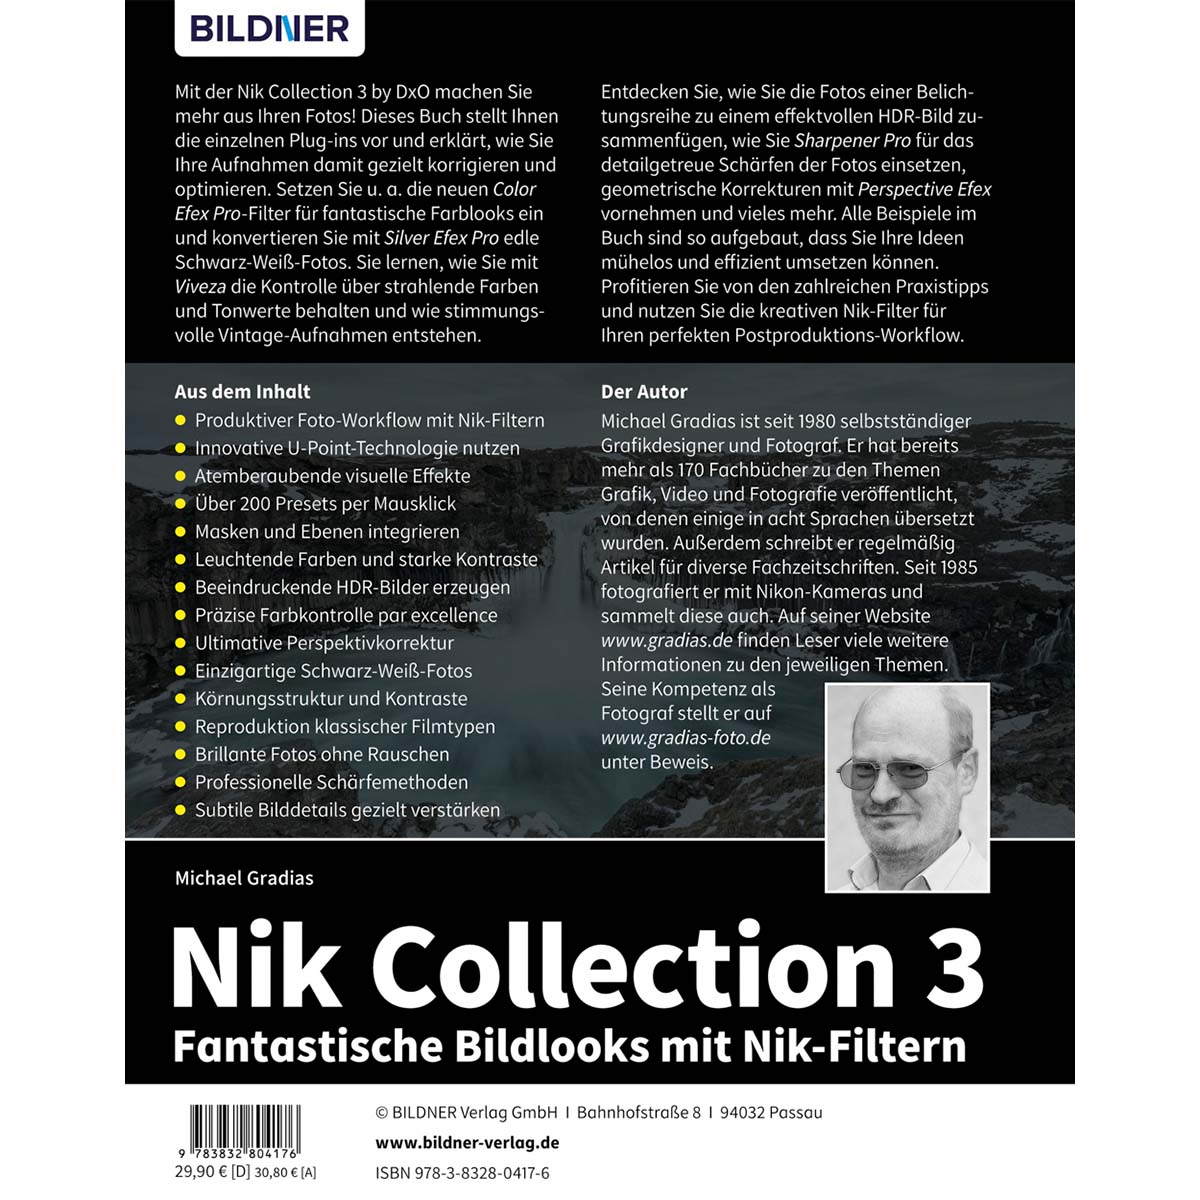 Nik Collection 3 - mit Nik-Filtern Fantastische Bildlooks